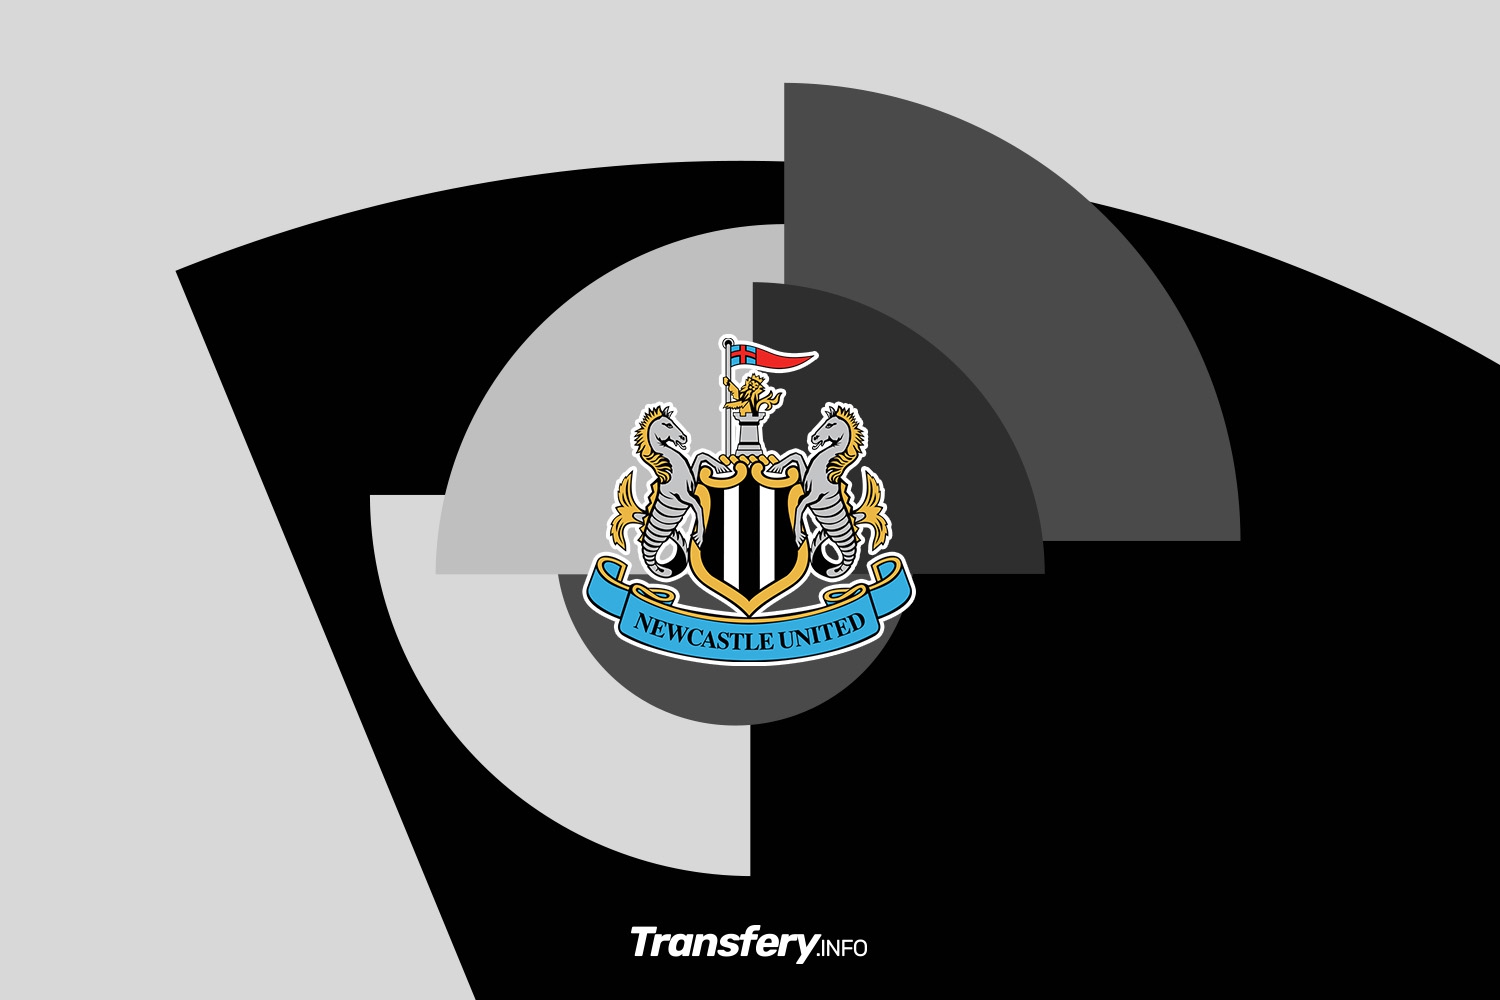 OFICJALNIE: Newcastle United z drugim letnim transferem bramkarza